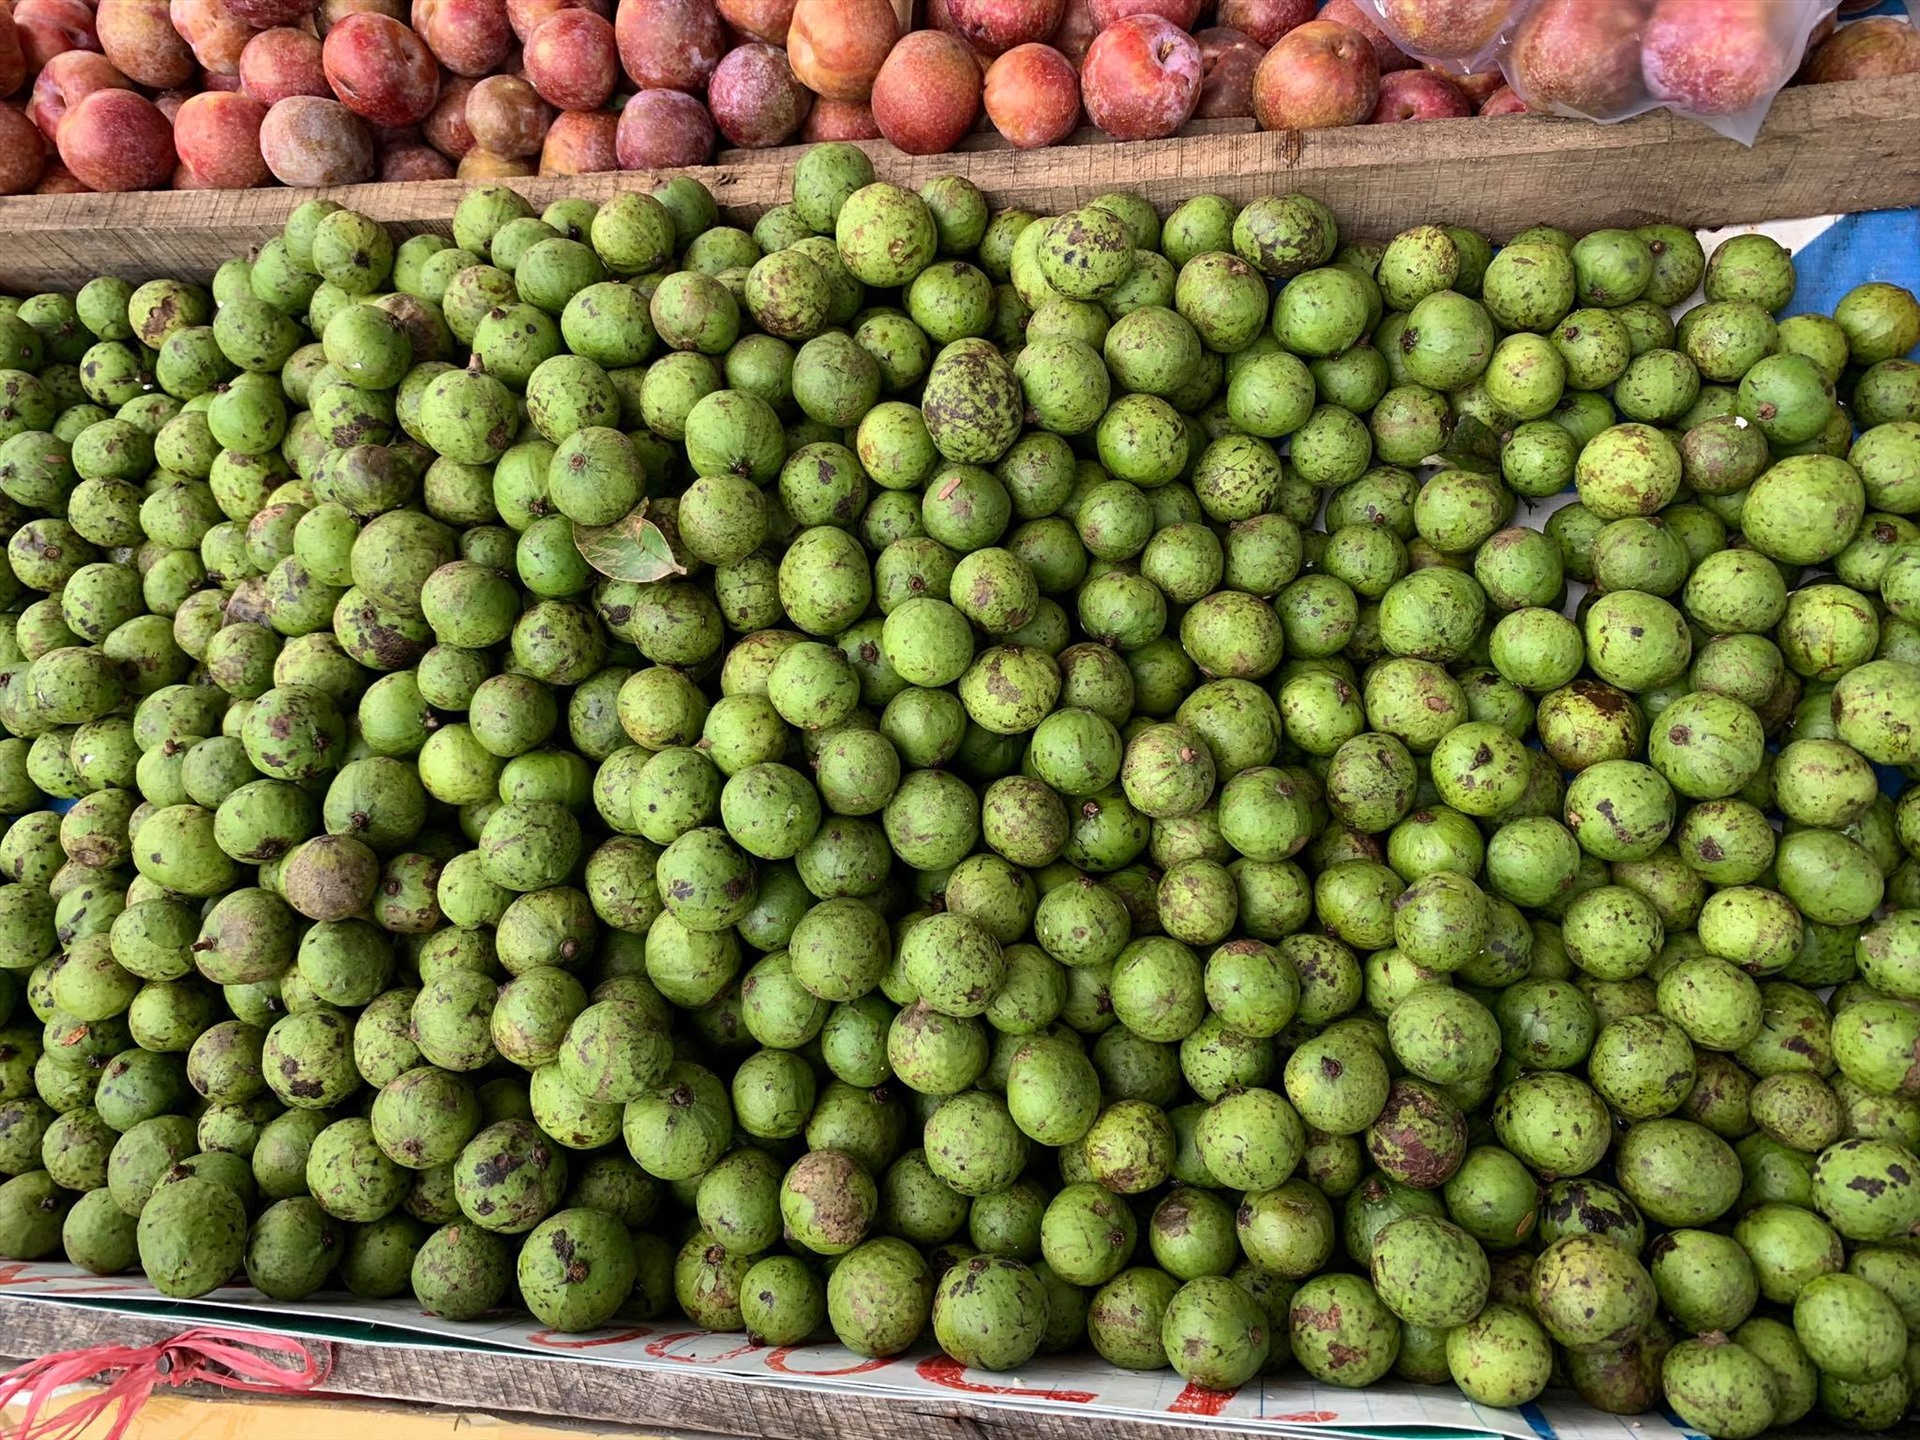 Theo chị H. bán trái cây trên đường Phạm Văn Bạch (quận Gò Vấp) cho biết: Sấu với mận Hà Nội được mùa mà vì không xuất khẩu được nên mới có giá rẻ. Như mọi năm giá của những loại trái cây này phải dao động từ 60-80.000/kg.